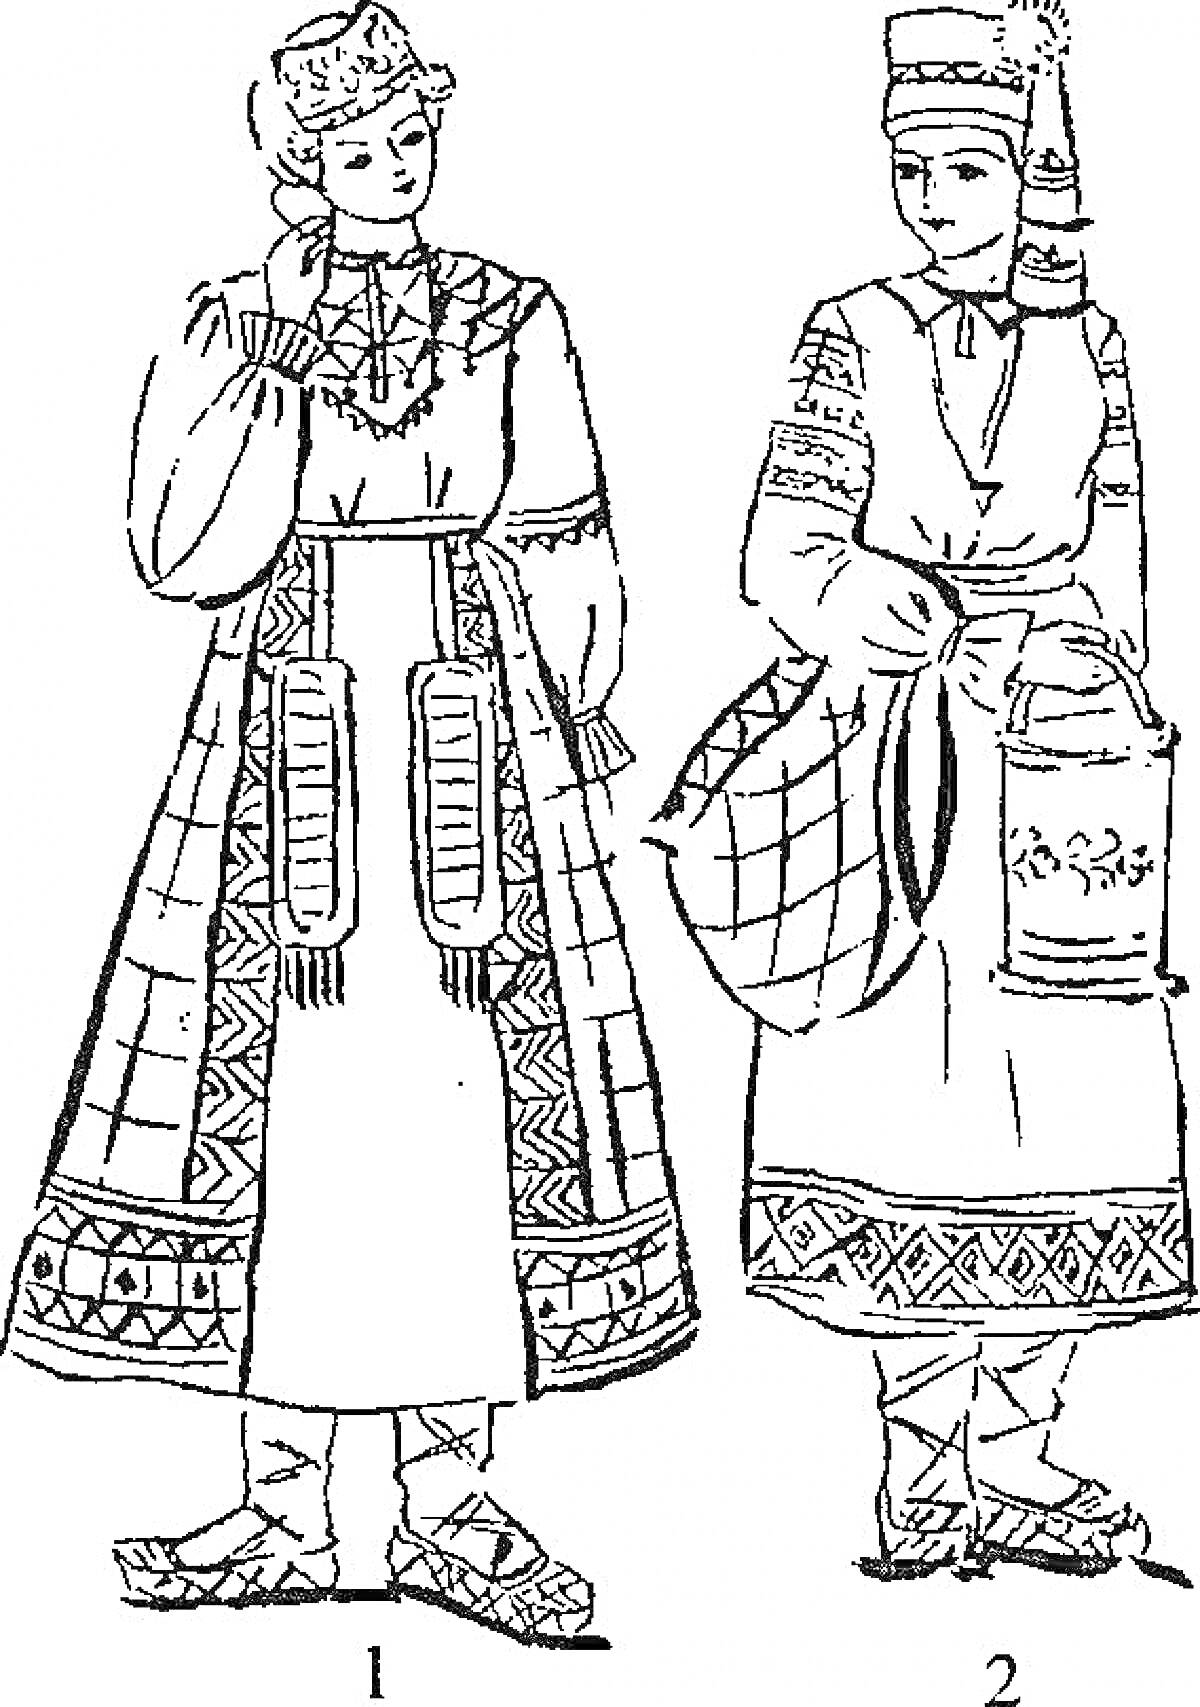 Два женских русского народного костюма, включающие кокошник, расшитую рубашку, сарафан, пояс, обувь (лапти), и фартук на втором костюме